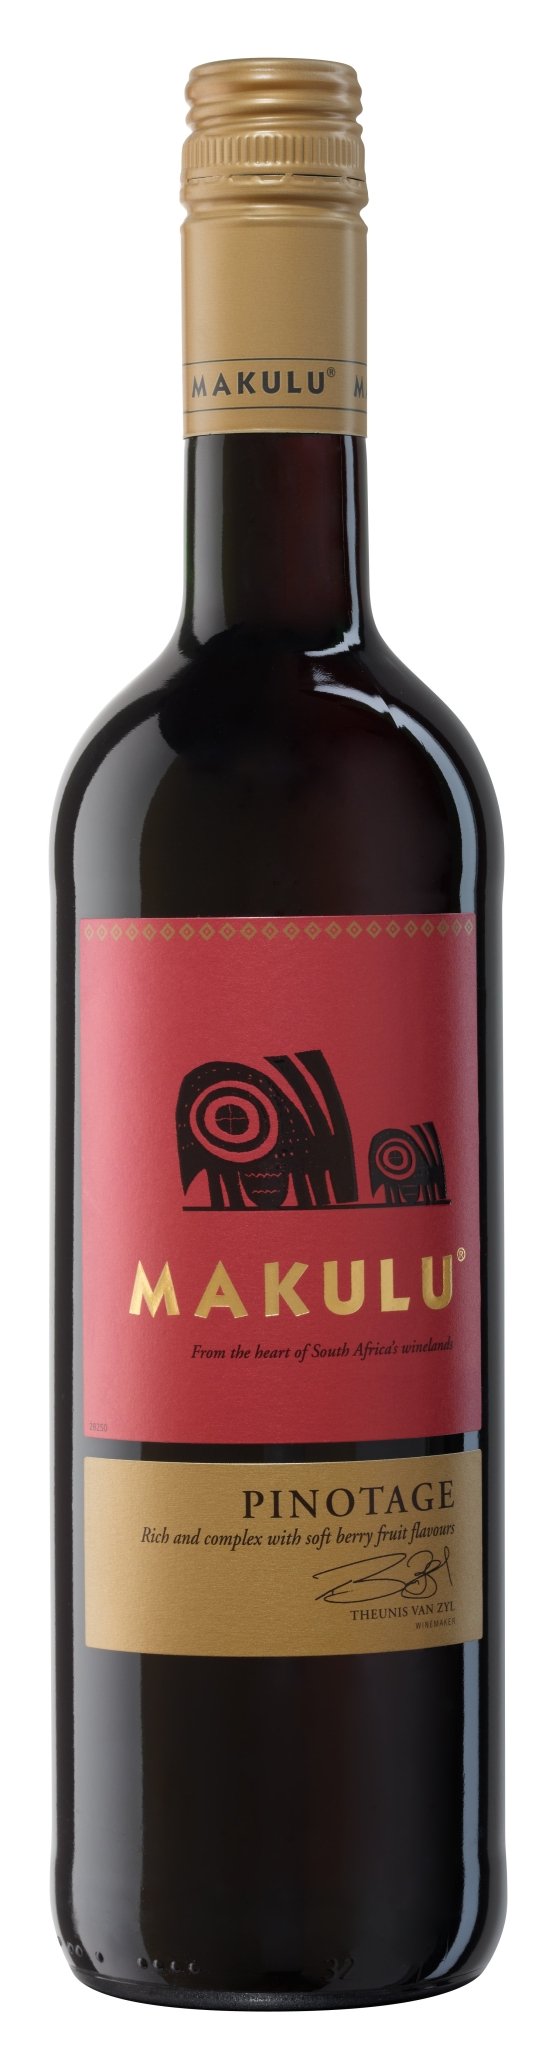 Makulu Pinotage 13,5% 0,75 ltr. - AllSpirits